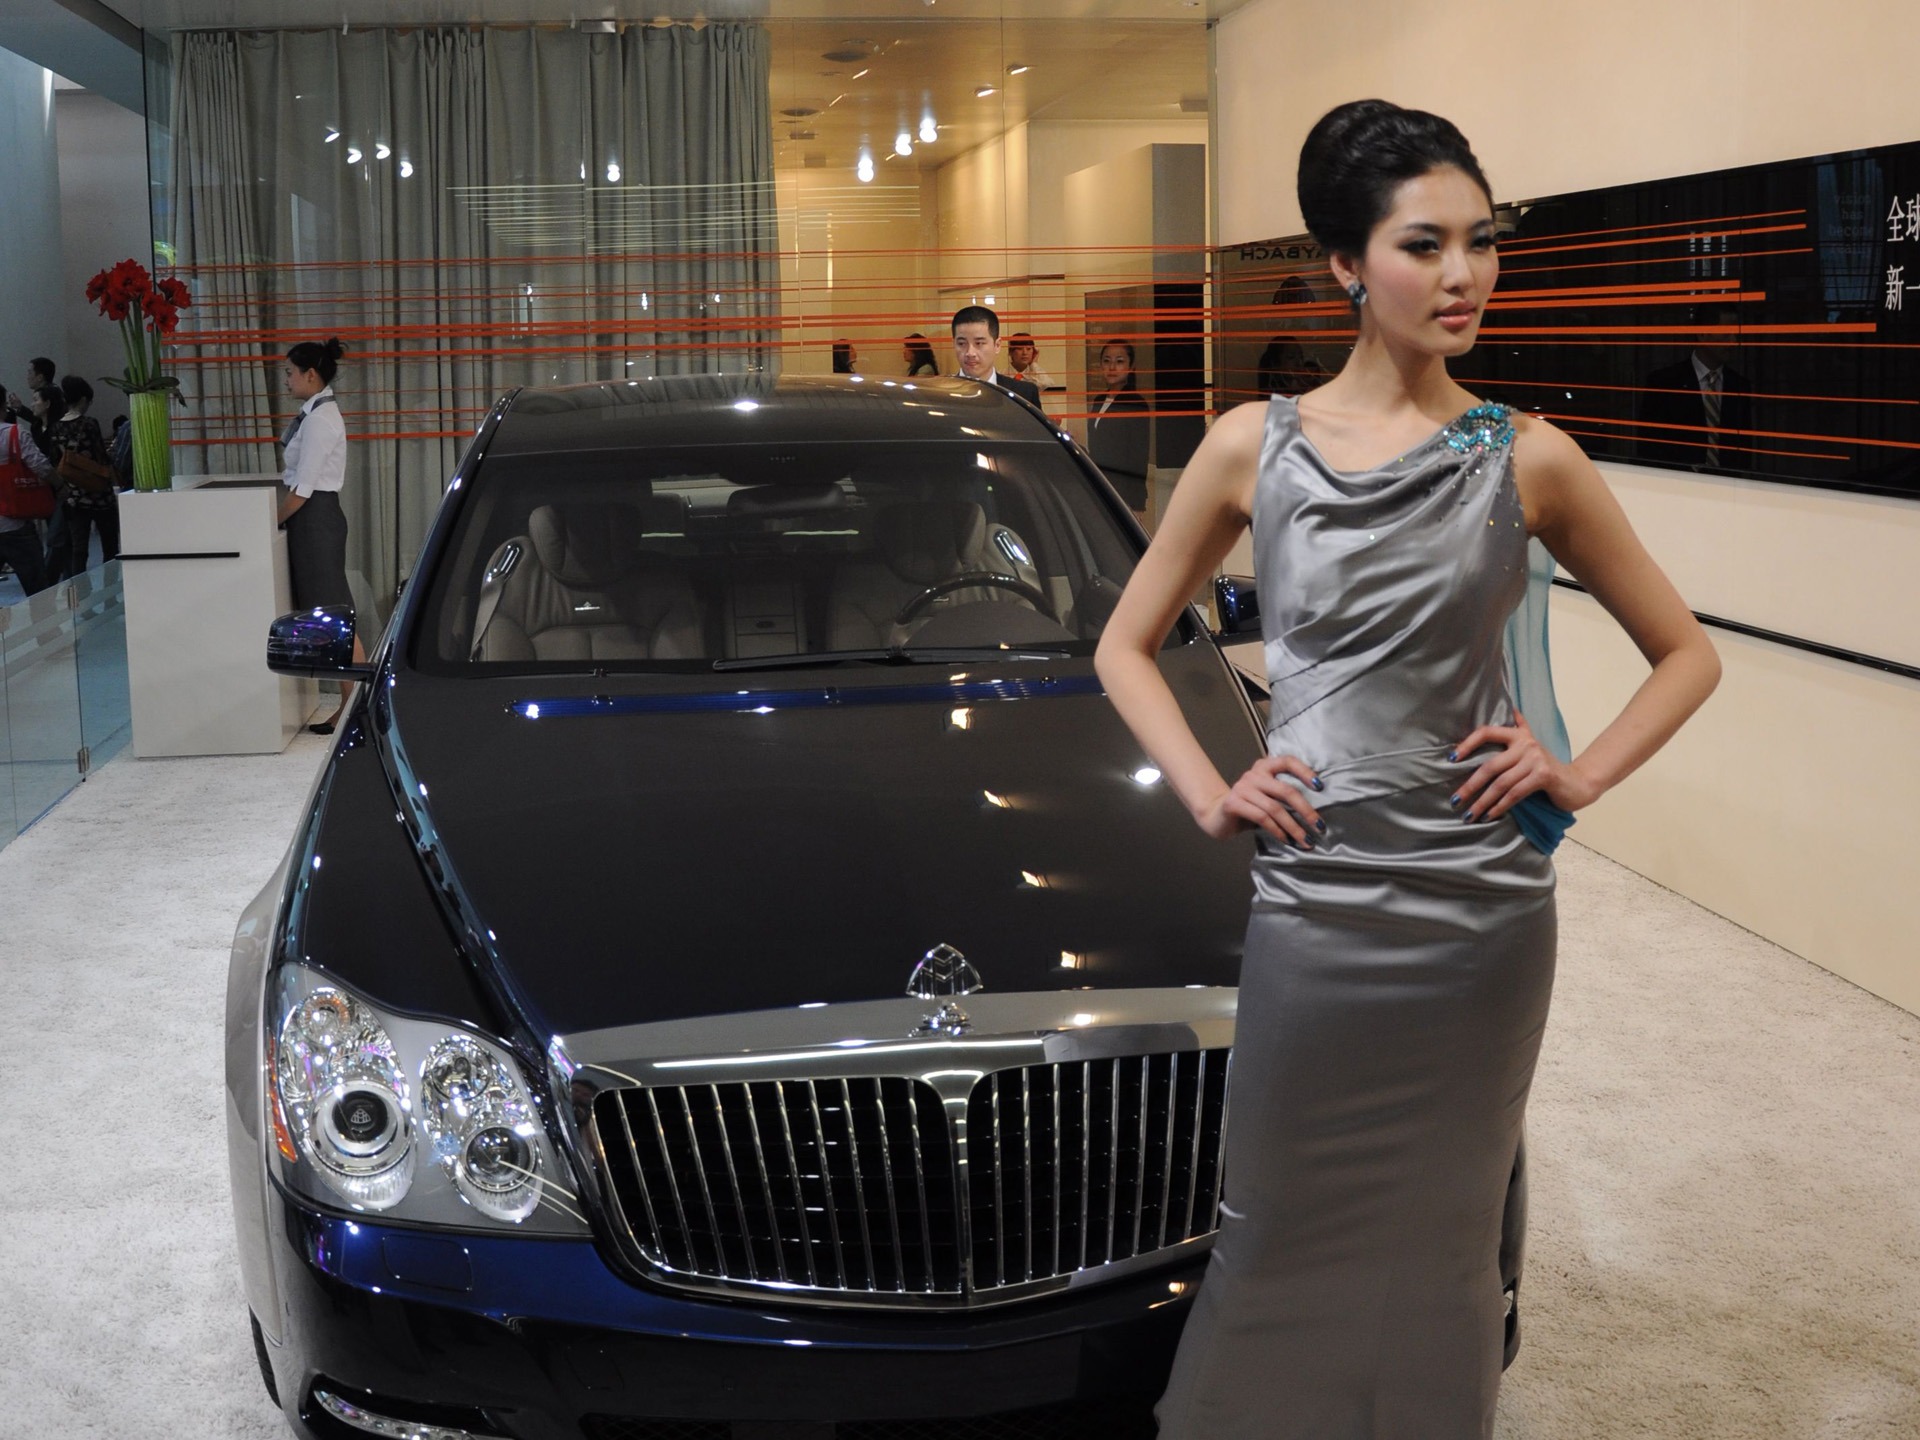 2010 Beijing International Auto Show (bemicoo works) #7 - 1920x1440